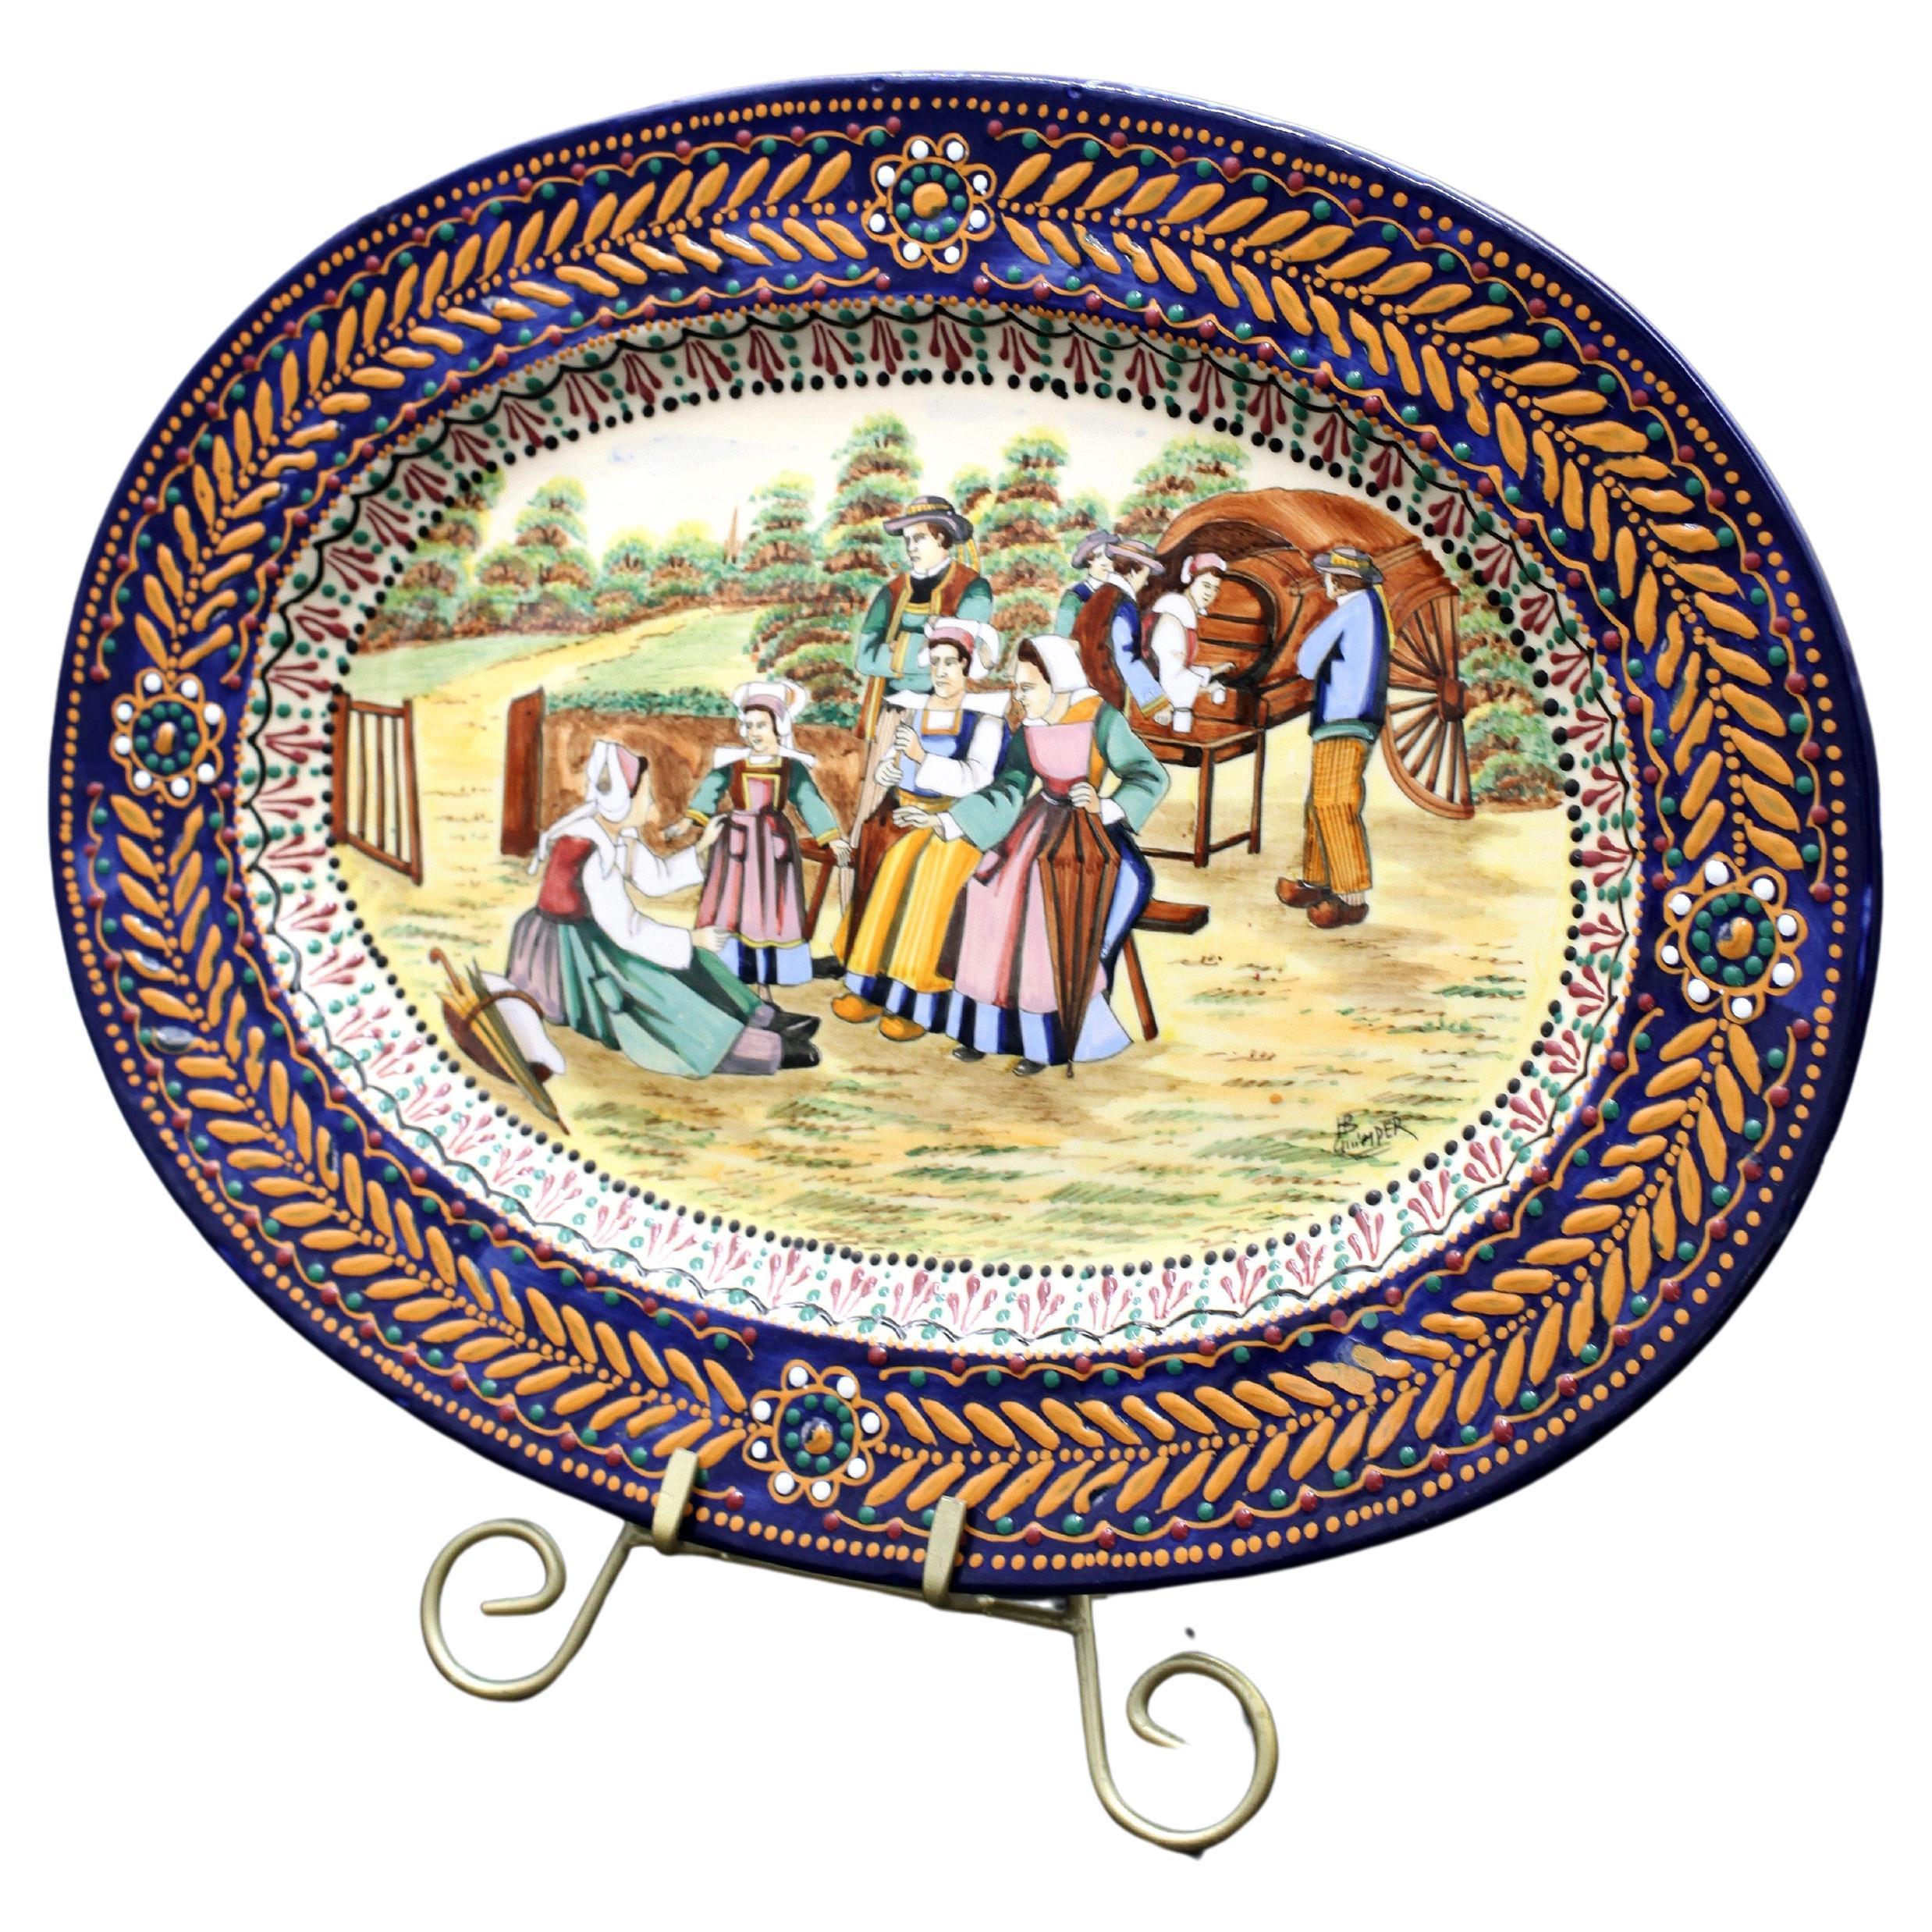 Plat ovale en poterie signé "HB QUIMPER" dans le motif Brodierre